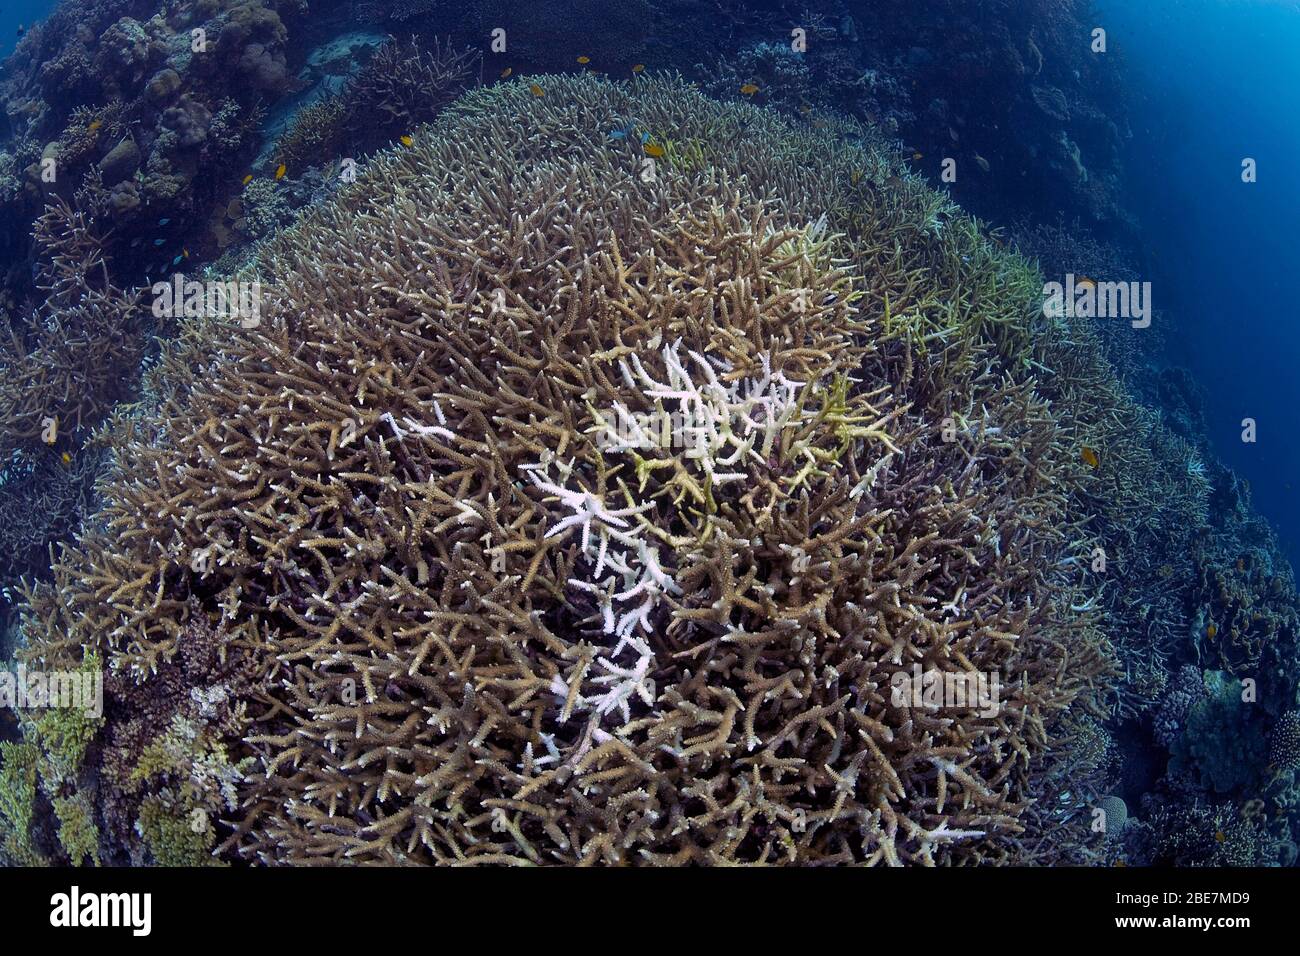 Le blanchissement des coraux de pierre blanchie, (Acroporidae), conséquences du réchauffement climatique, de corail mort, Moalboal, Cebu, Philippinen Banque D'Images